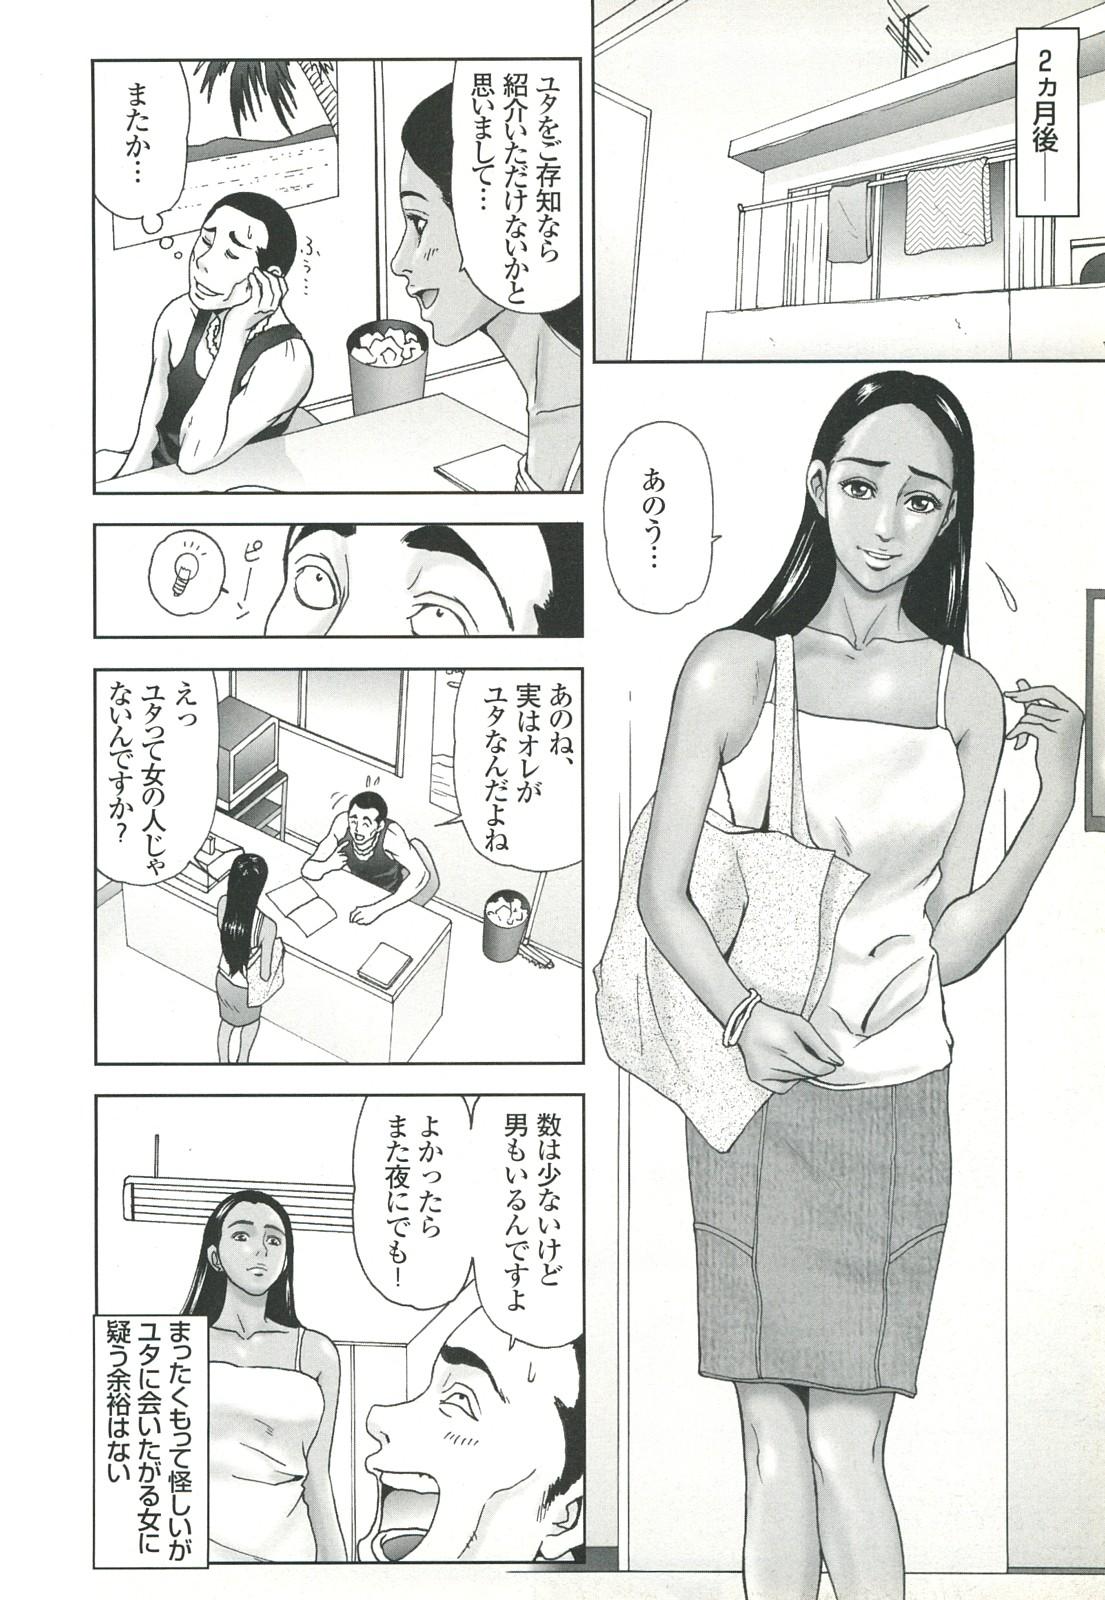 コミック裏モノJAPAN Vol.18 今井のりたつスペシャル号 49